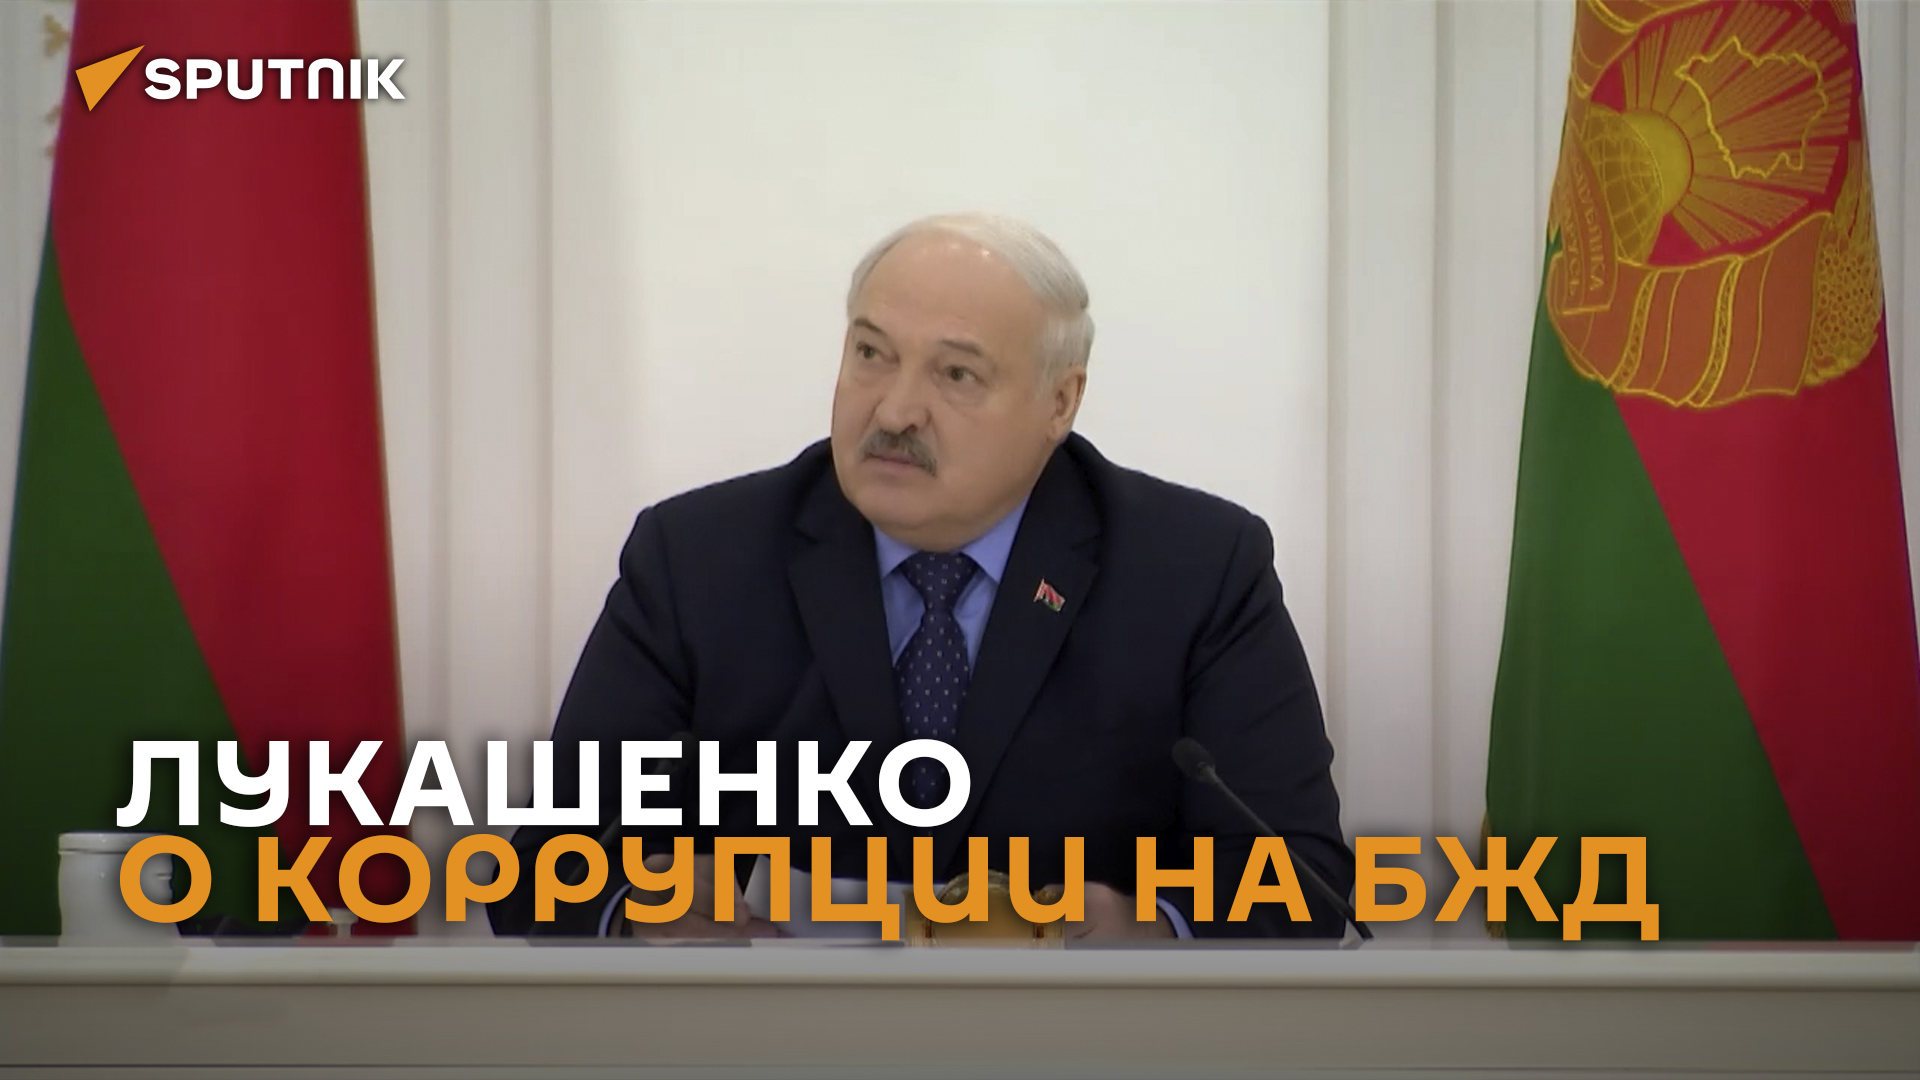 Вы думаете, он один там ворюга? Лукашенко о коррупции на БЖД – видео